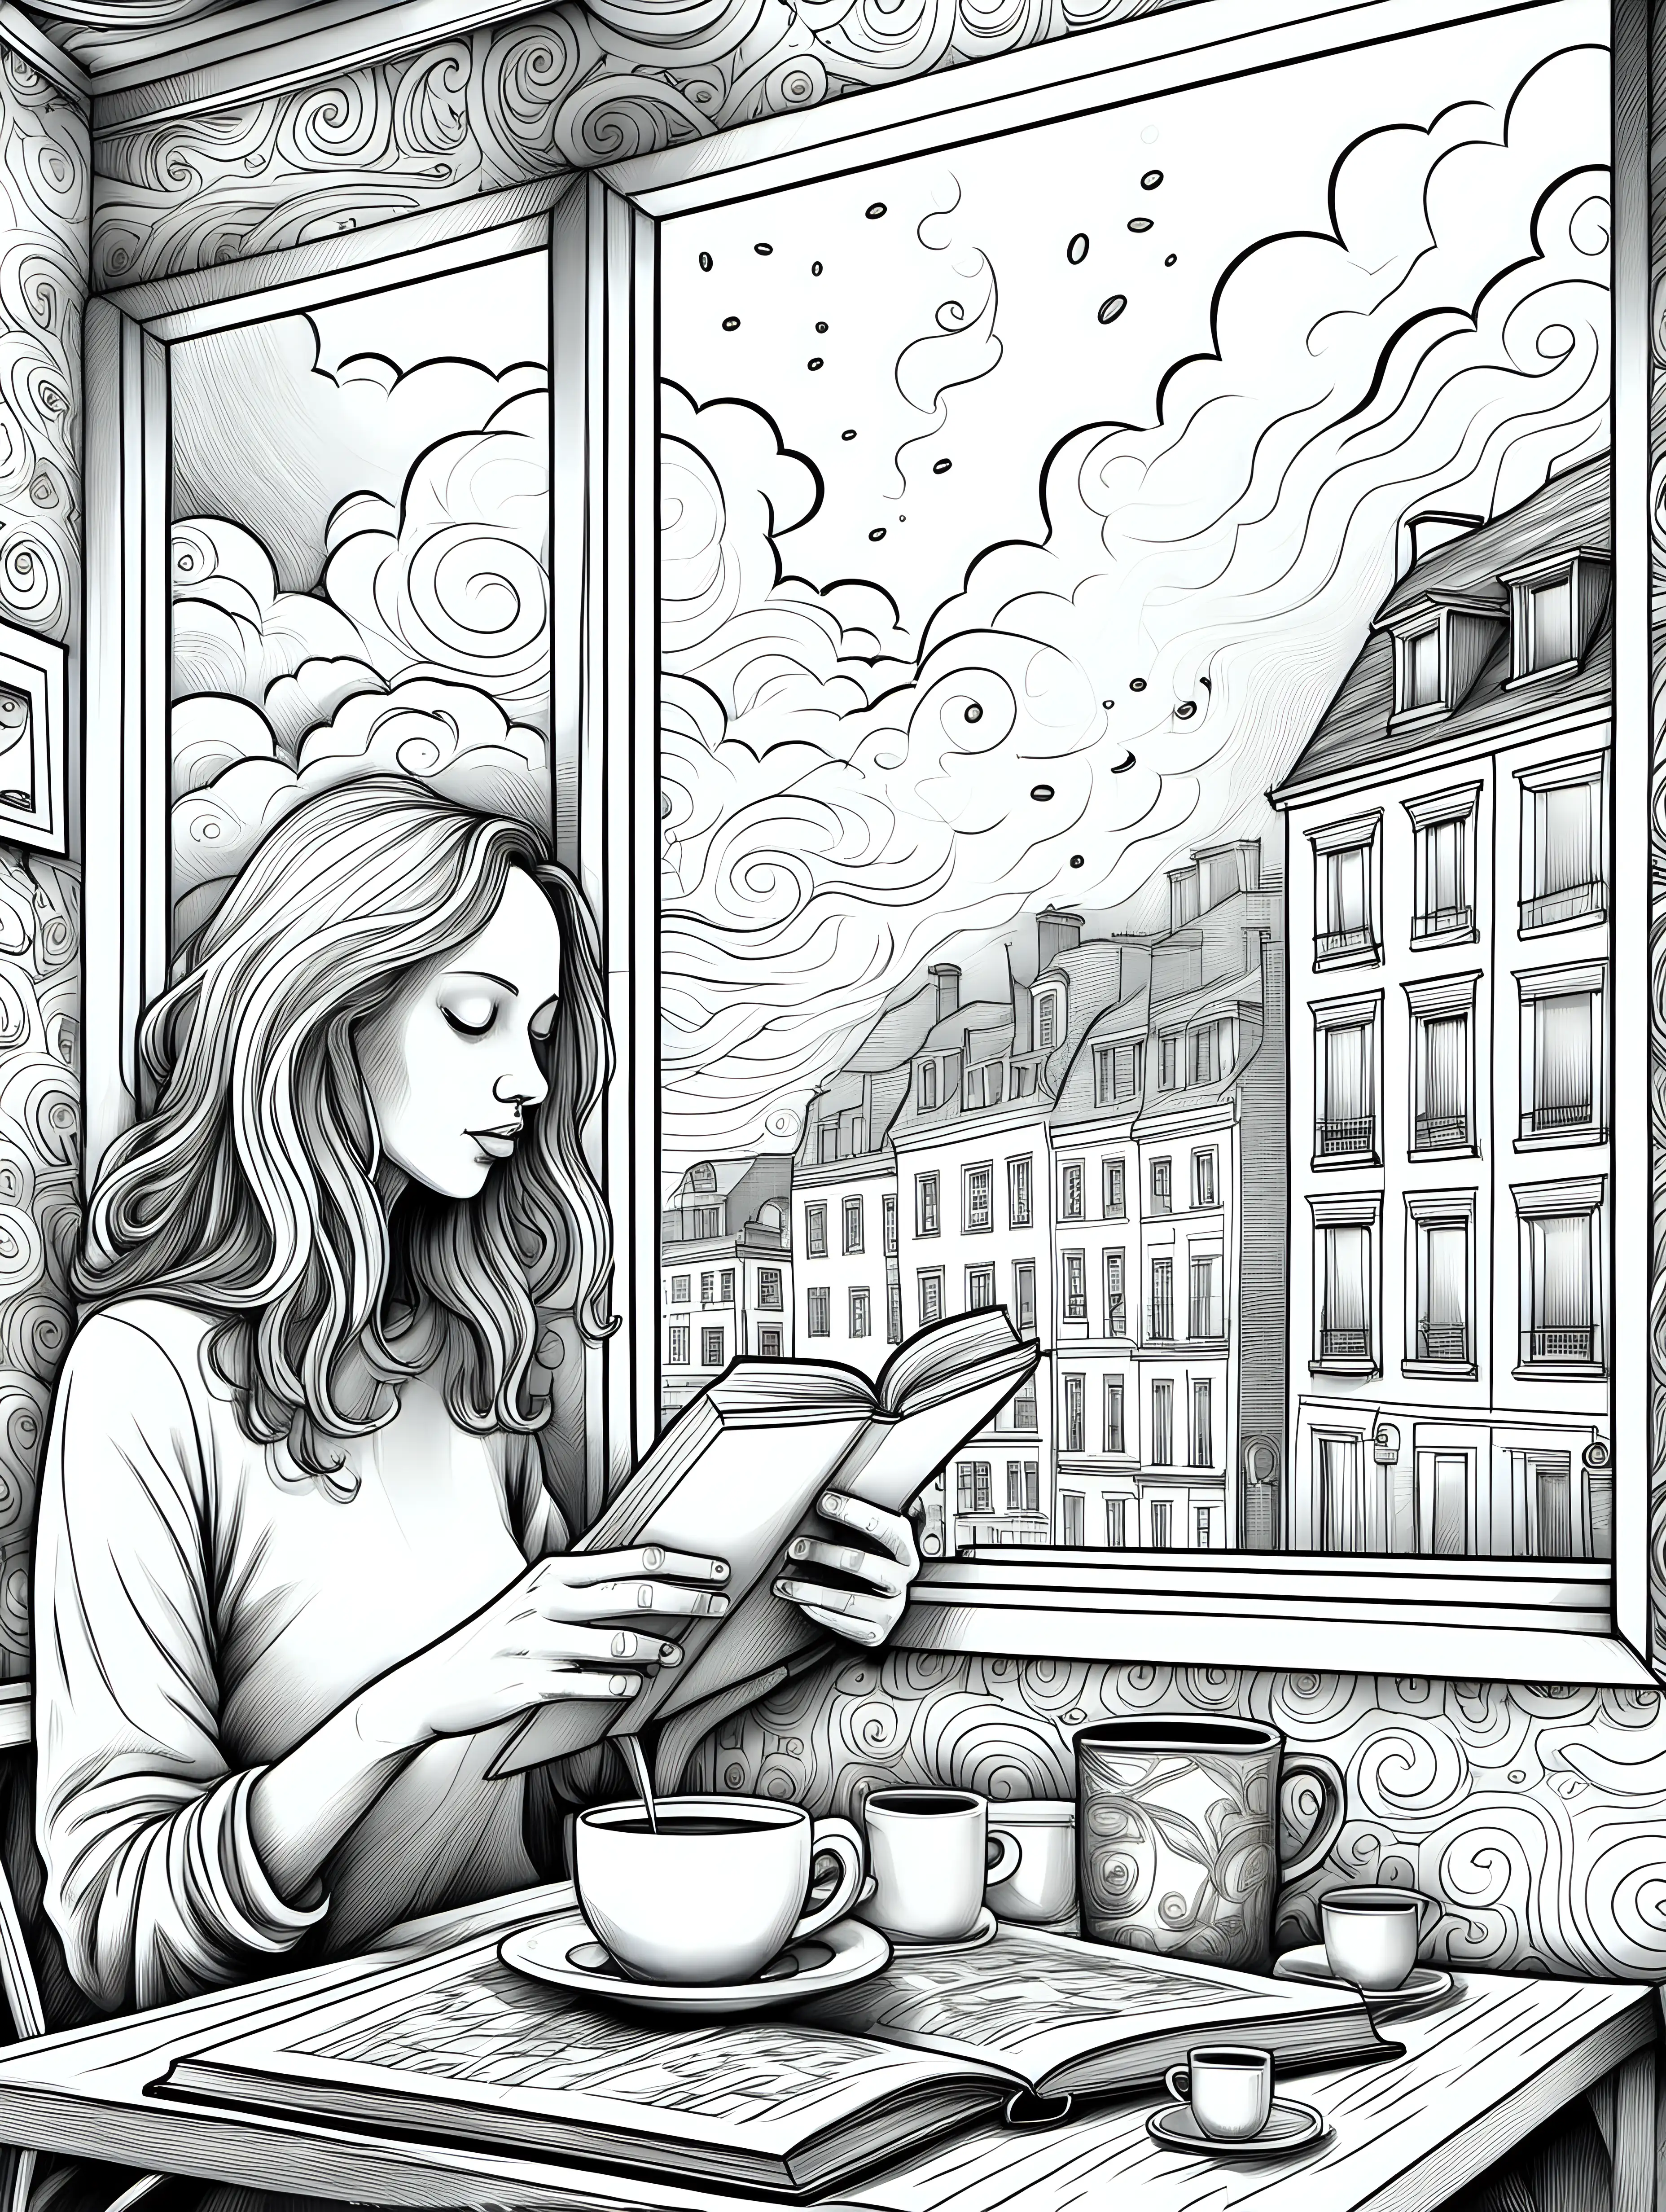 Entwirf eine Serie von Illustrationen für ein Erwachsenen-Malbuch mit dem Titel 'Kaffeeklatsch und Farbenzauber', das sich auf die intimen Momente des Kaffeegenusses konzentriert. Die Bilder sollen die persönliche und fast meditative Erfahrung des Kaffeetrinkens zu Hause oder in einem stillen Eckcafé darstellen. Stelle dir Szenarien vor, wie jemand am frühen Morgen seinen frisch gebrühten Kaffee an einem regennassen Fenster genießt, eine Person, die in ein Buch vertieft ist, während sie neben einer dampfenden Espresso-Tasse sitzt, oder eine kreative Seele, die in einem Notizbuch kritzelt, umgeben von einer inspirierenden Sammlung von Kaffeeutensilien.

Die Illustrationen sollten feine Details enthalten, wie die Textur des Kaffeeschaums, das Muster auf einer Keramiktasse oder die sanften Dampfschwaden über einer heißen Tasse. Jedes Bild sollte genug Komplexität bieten, um den Ausmalern ein tiefes Eintauchen zu ermöglichen und gleichzeitig Raum für individuelle Farbgestaltung lassen. Ziel ist es, eine Kollektion zu kreieren, die nicht nur die sensorischen Freuden des Kaffeetrinkens einfängt, sondern auch als Rückzugsort für Ruhe und künstlerische Entfaltung dient.
